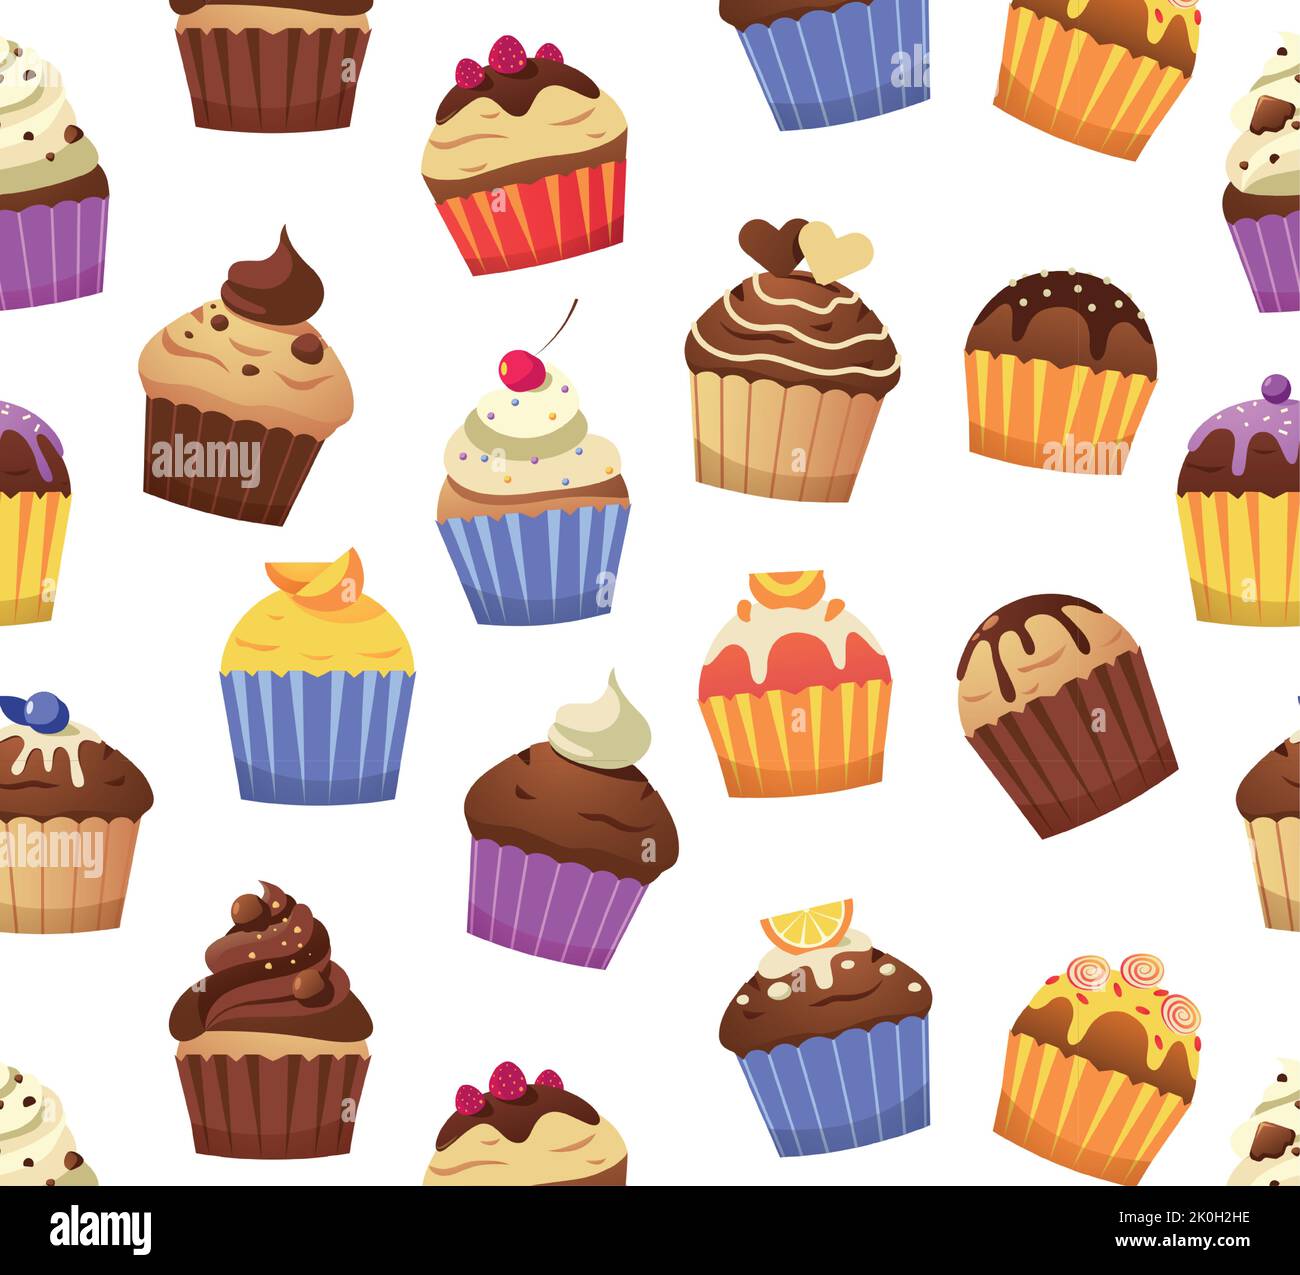 Cupcake-Muster. Nahtloser Druck von verschiedenen Muffins süße Gebäck mit Glasur Toppings Creme Streuseln dekoriert. Vector Bäckerei Desserts Textur Stock Vektor